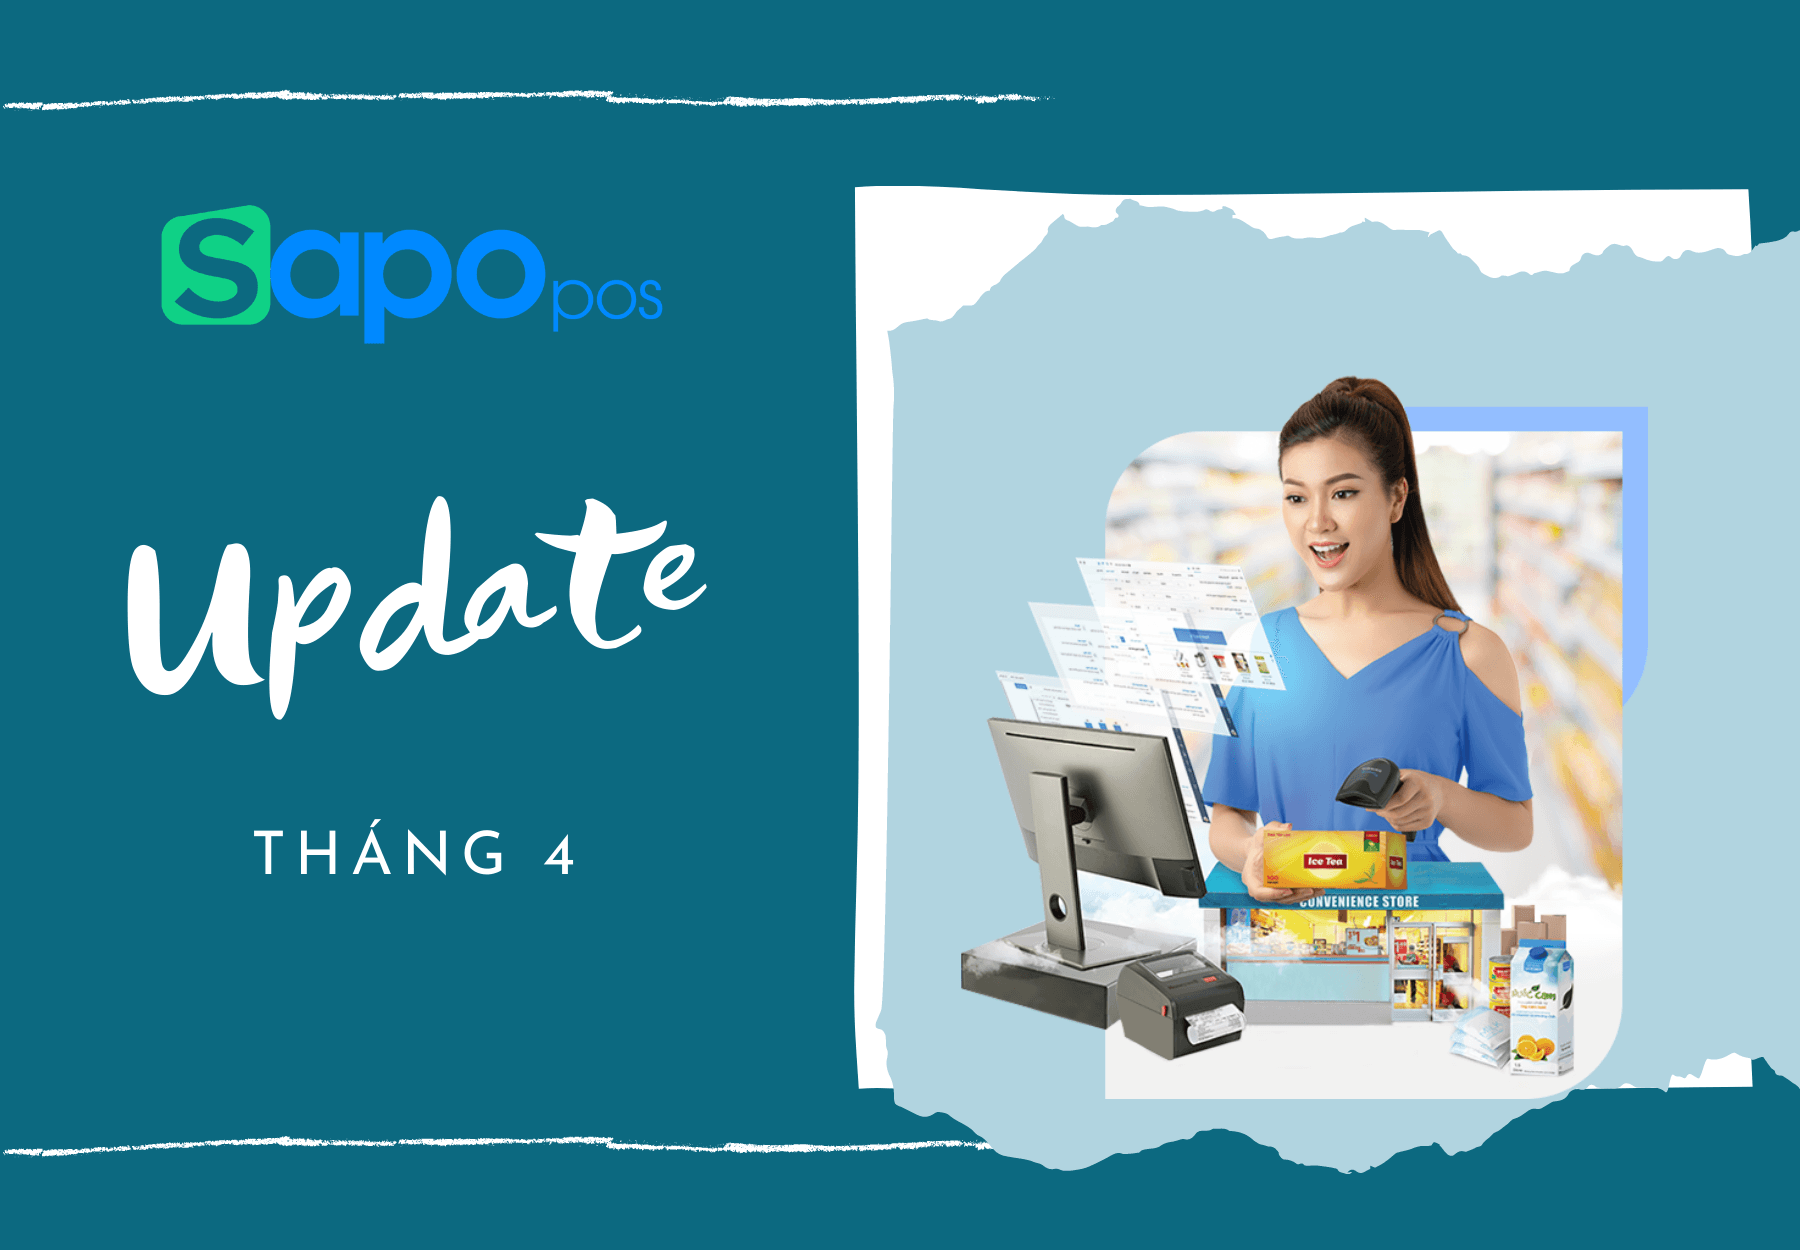 Sapo POS update tháng 4: Những tính năng hỗ trợ chủ kinh doanh quản lý bán hàng hiệu quả nhất